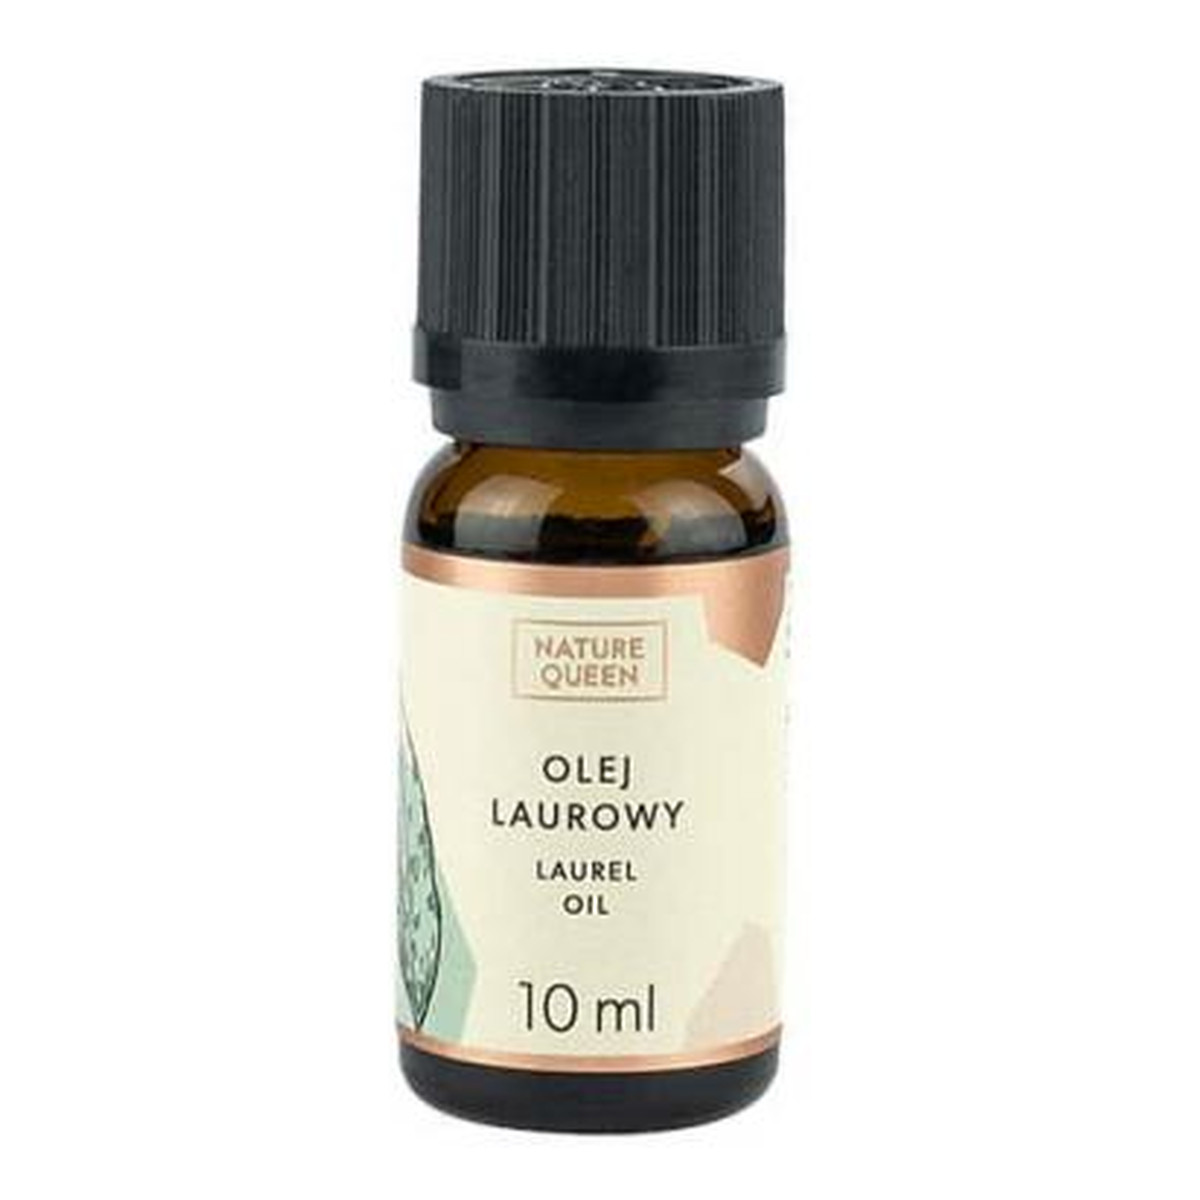 Nature Queen Laurel Oil Olejek Laurowy 10ml